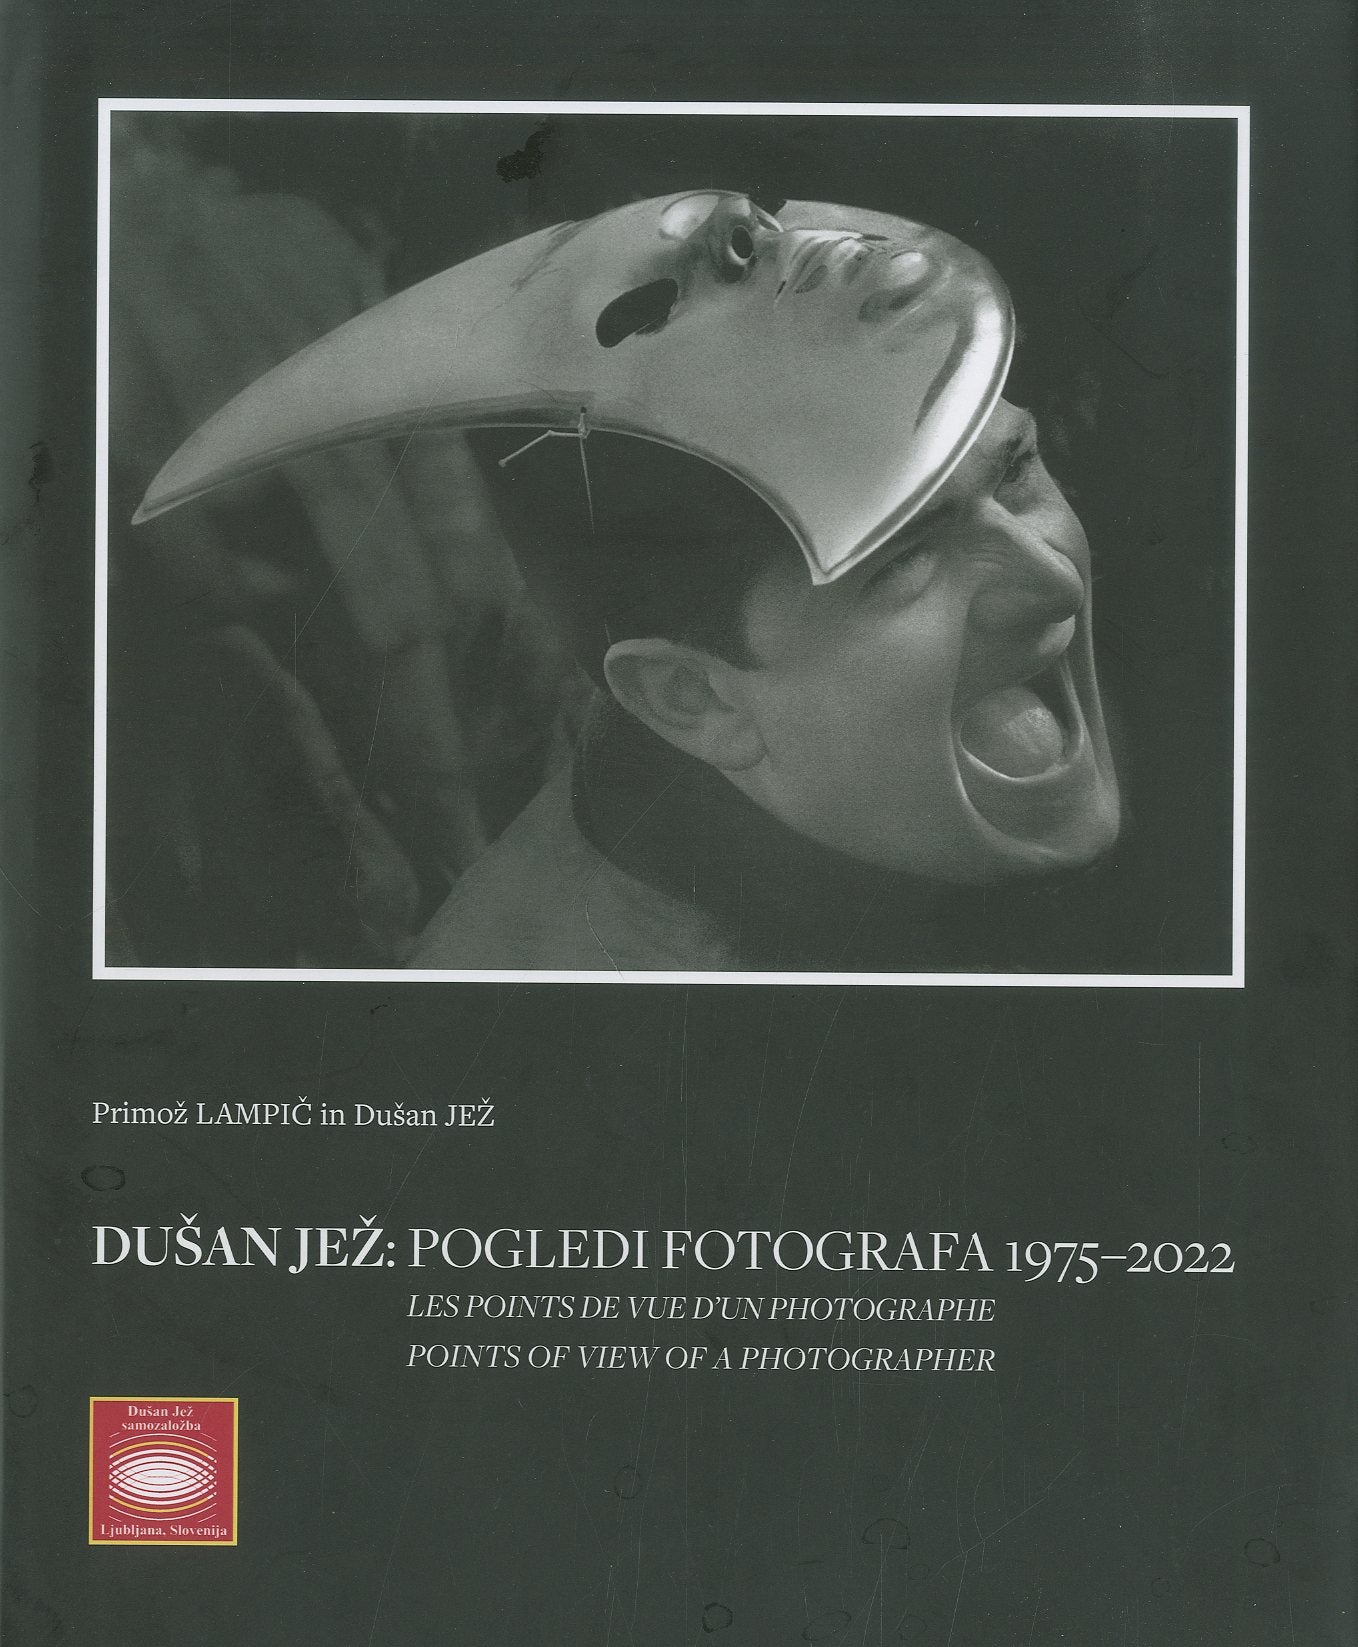 Dušan Jež - pogledi fotografa (1975-2022)